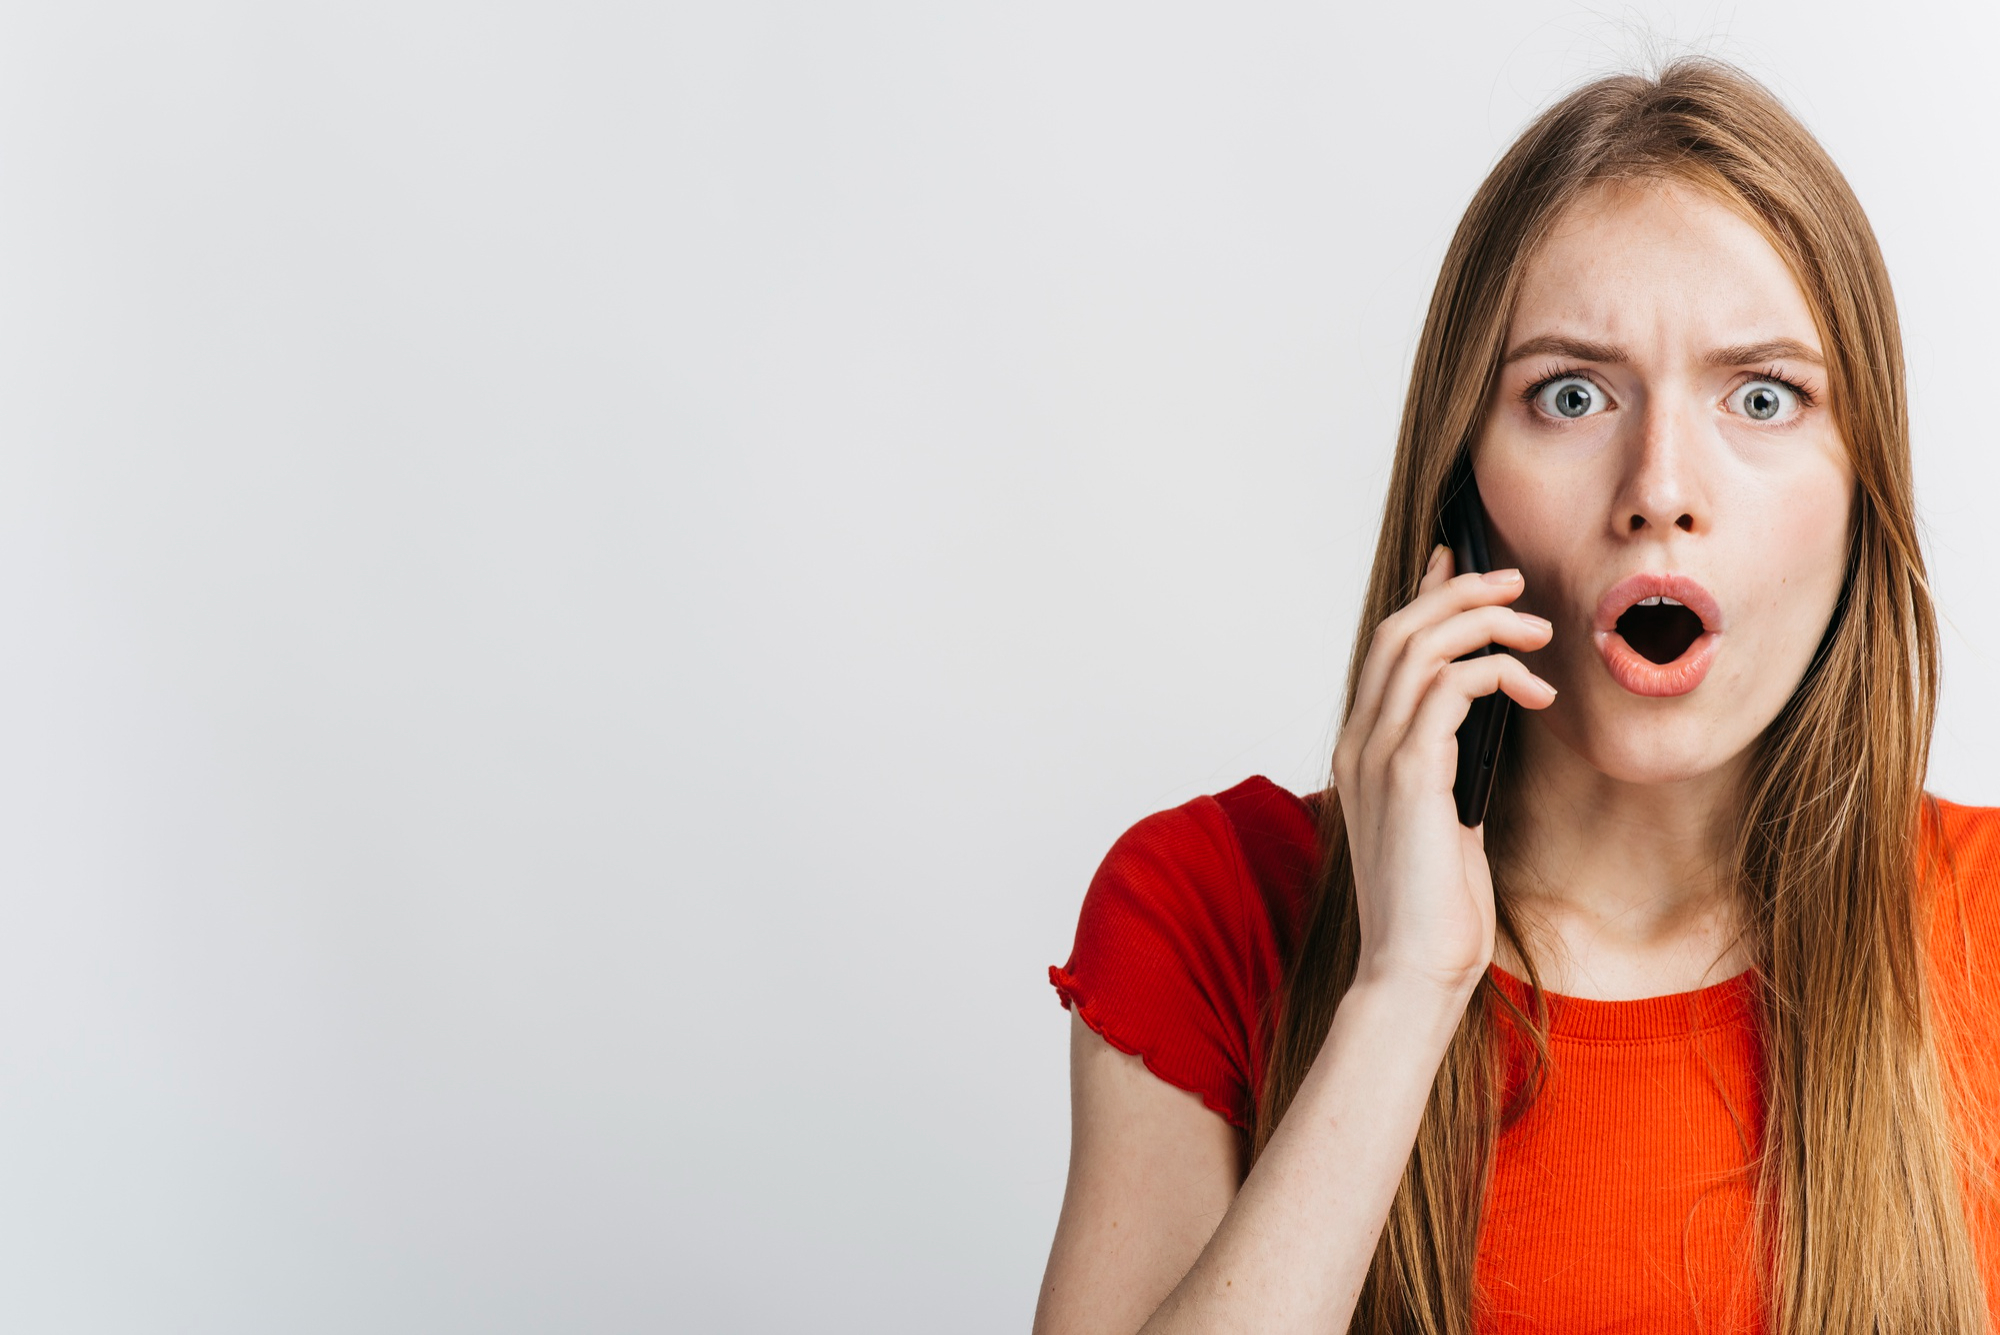 Una mujer reacciona en estado de shock durante una llamada telefónica | Fuente: Freepik